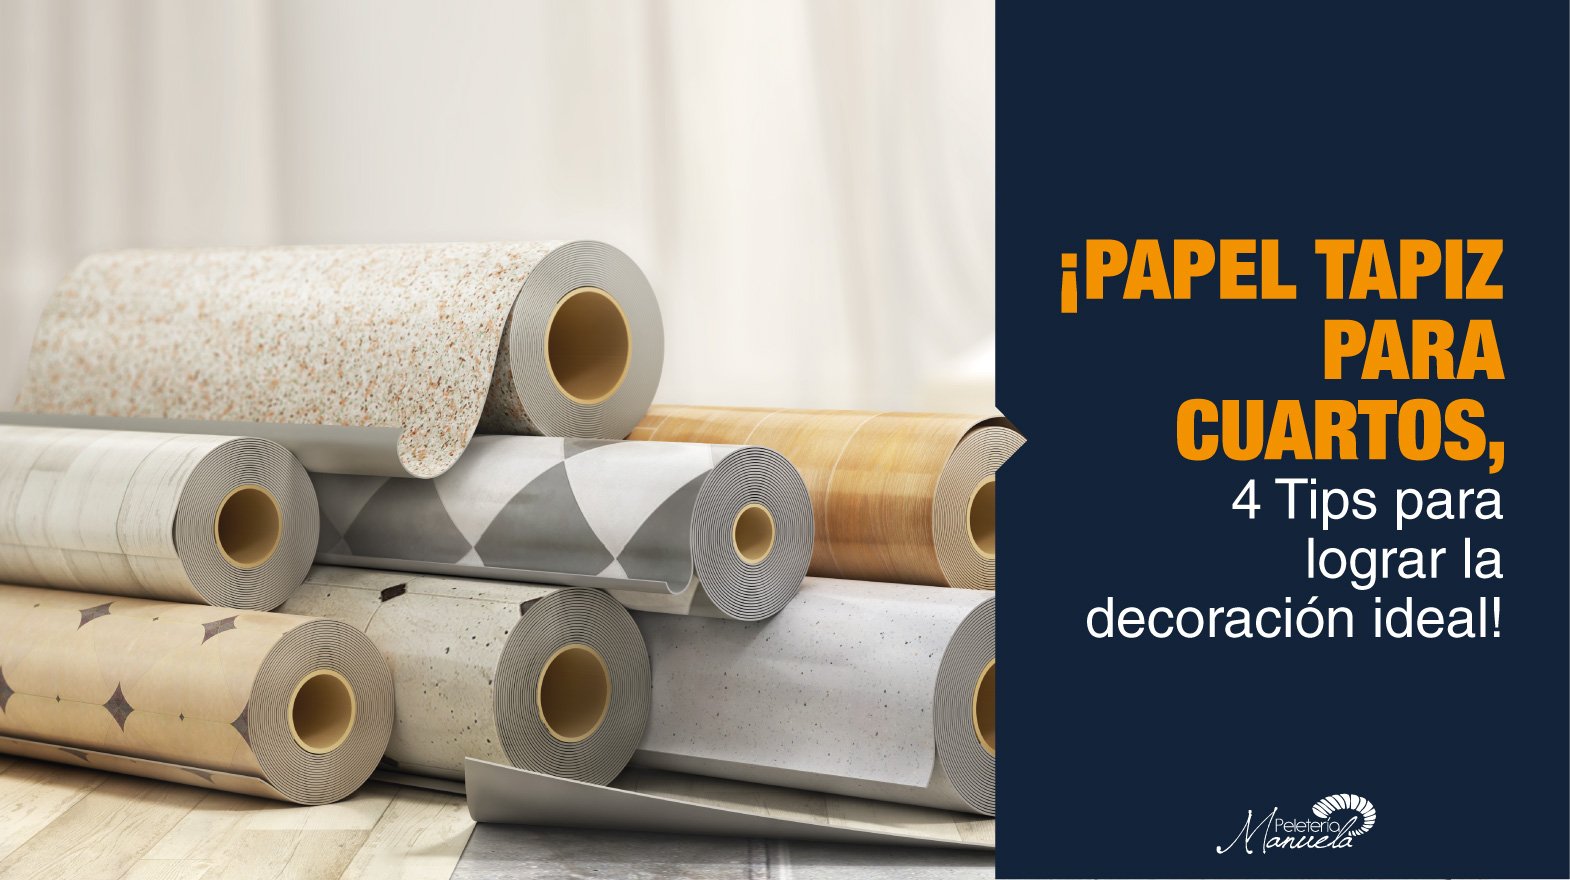 4 tips para redecorar con papel tapiz